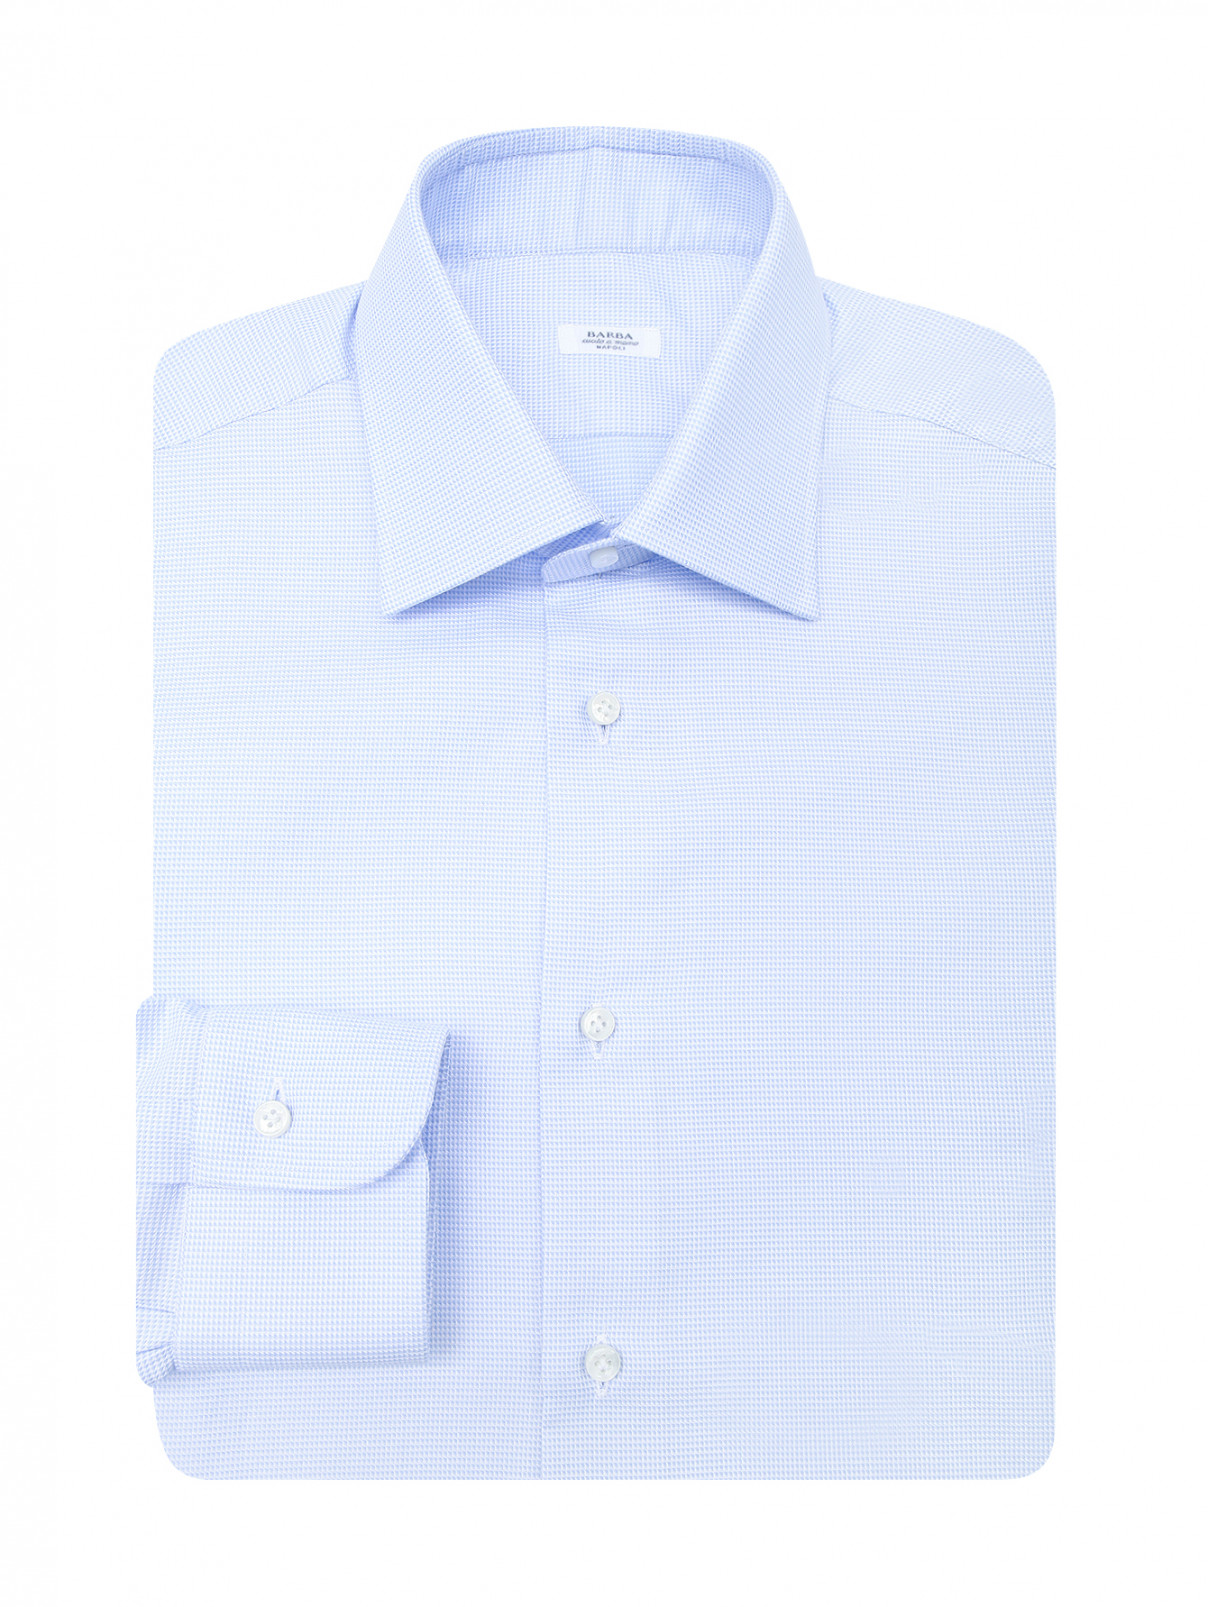 Классическая рубашка из хлопка Barba Napoli  –  Общий вид  – Цвет:  Синий